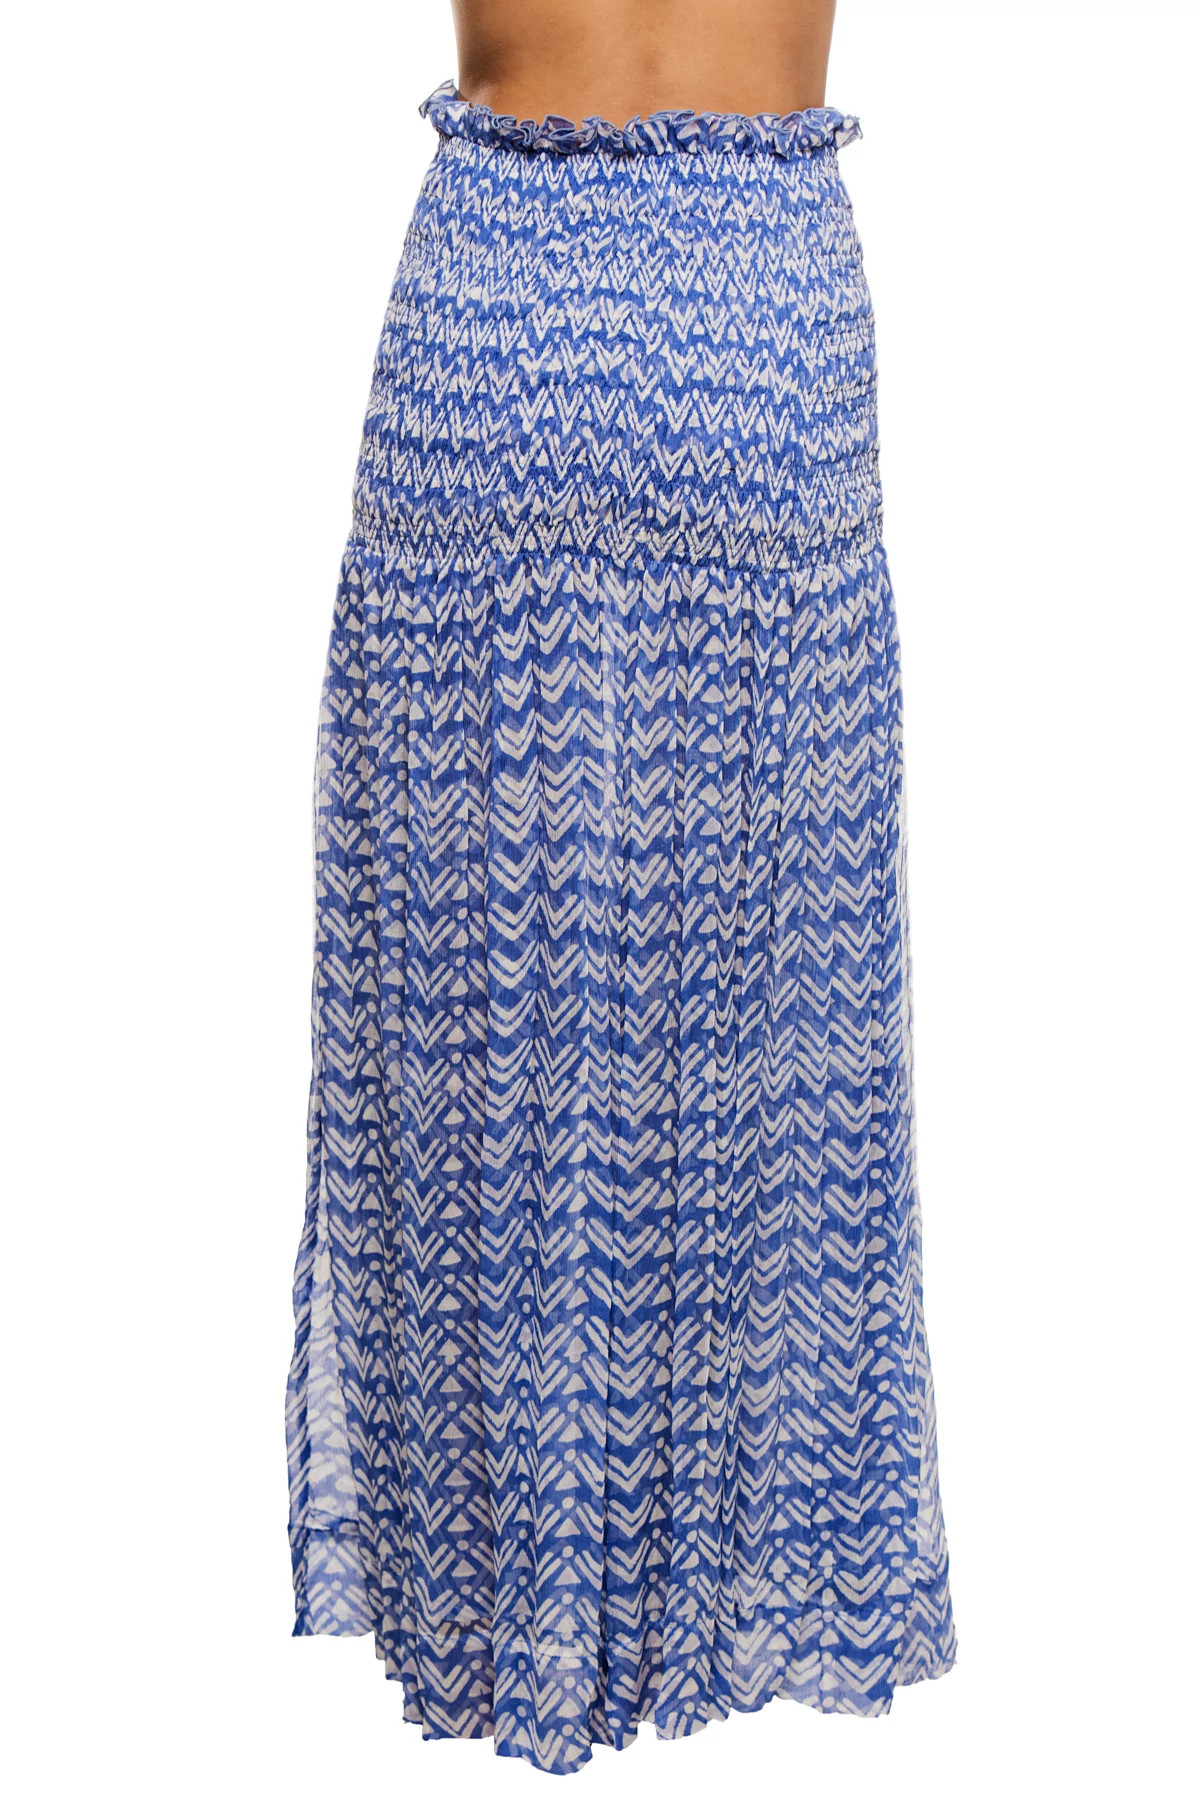 DENIM BLUE/ARROW Billie Convertible Dress/Skirt image number 4